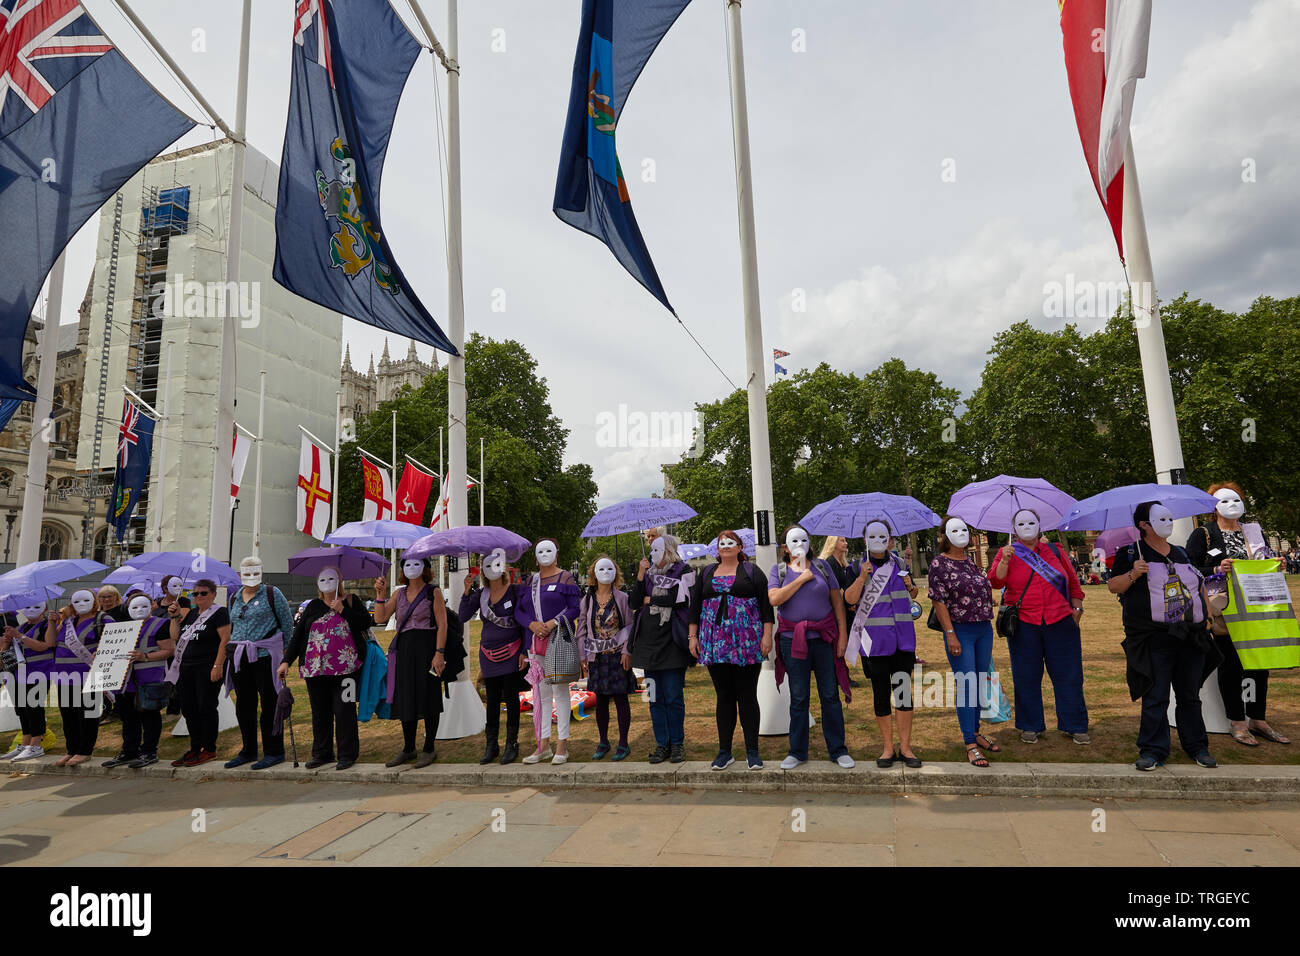 London, Regno Unito - 5 giugno, 2019: WASPI manifestanti, campagne di sensibilizzazione per le pensioni delle donne a partire dagli anni cinquanta ha dimostrato in piazza del Parlamento il giorno di un controllo giurisdizionale. Foto Stock